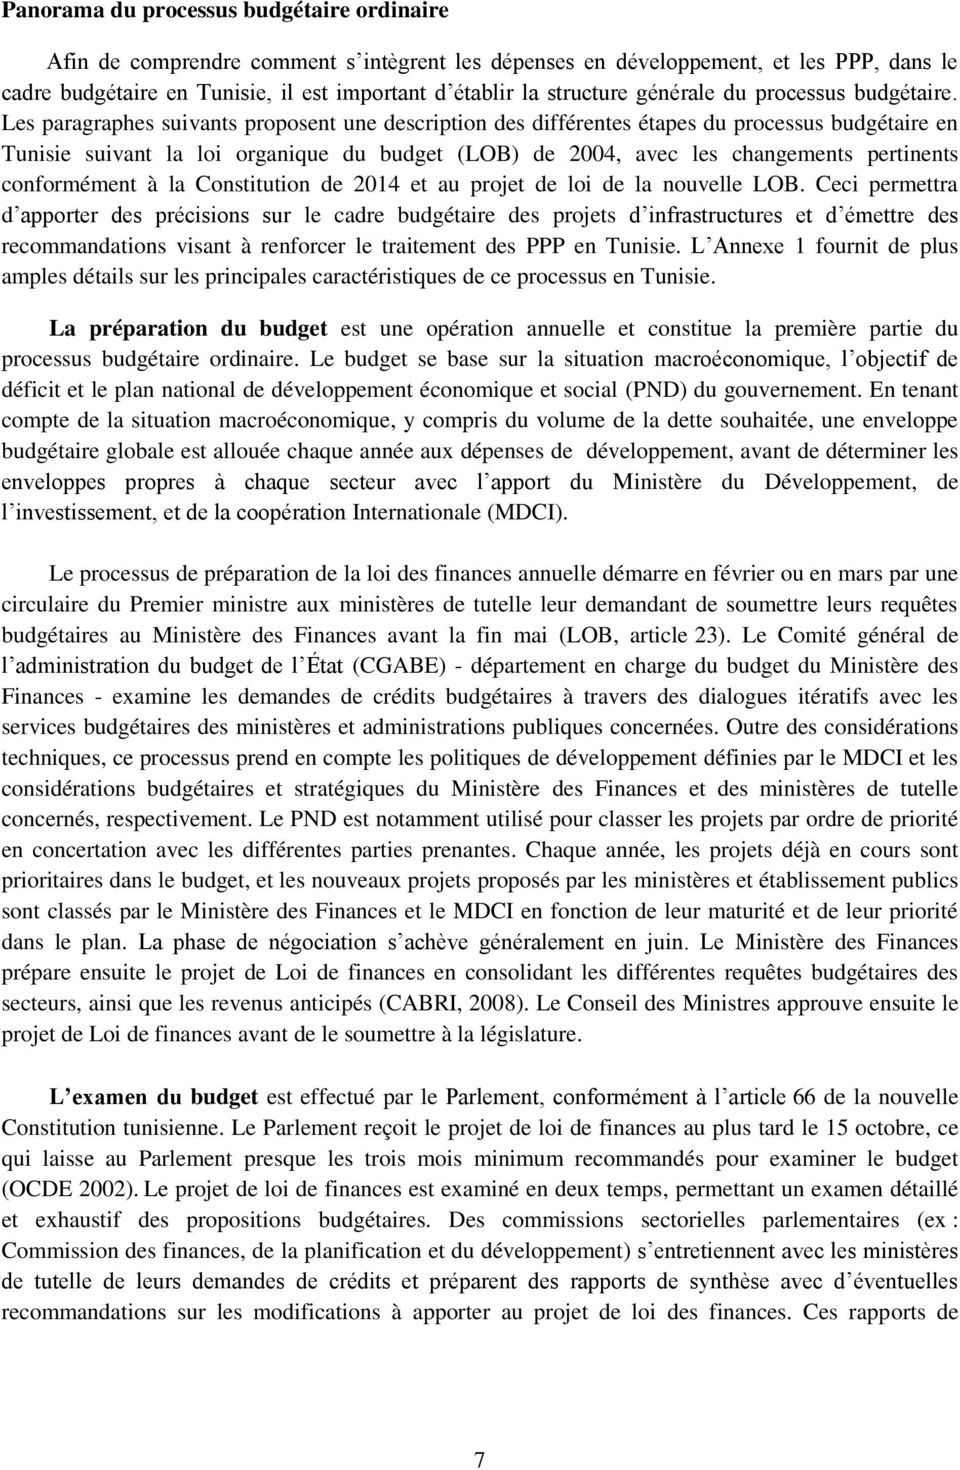 Les paragraphes suivants proposent une description des différentes étapes du processus budgétaire en Tunisie suivant la loi organique du budget (LOB) de 2004, avec les changements pertinents